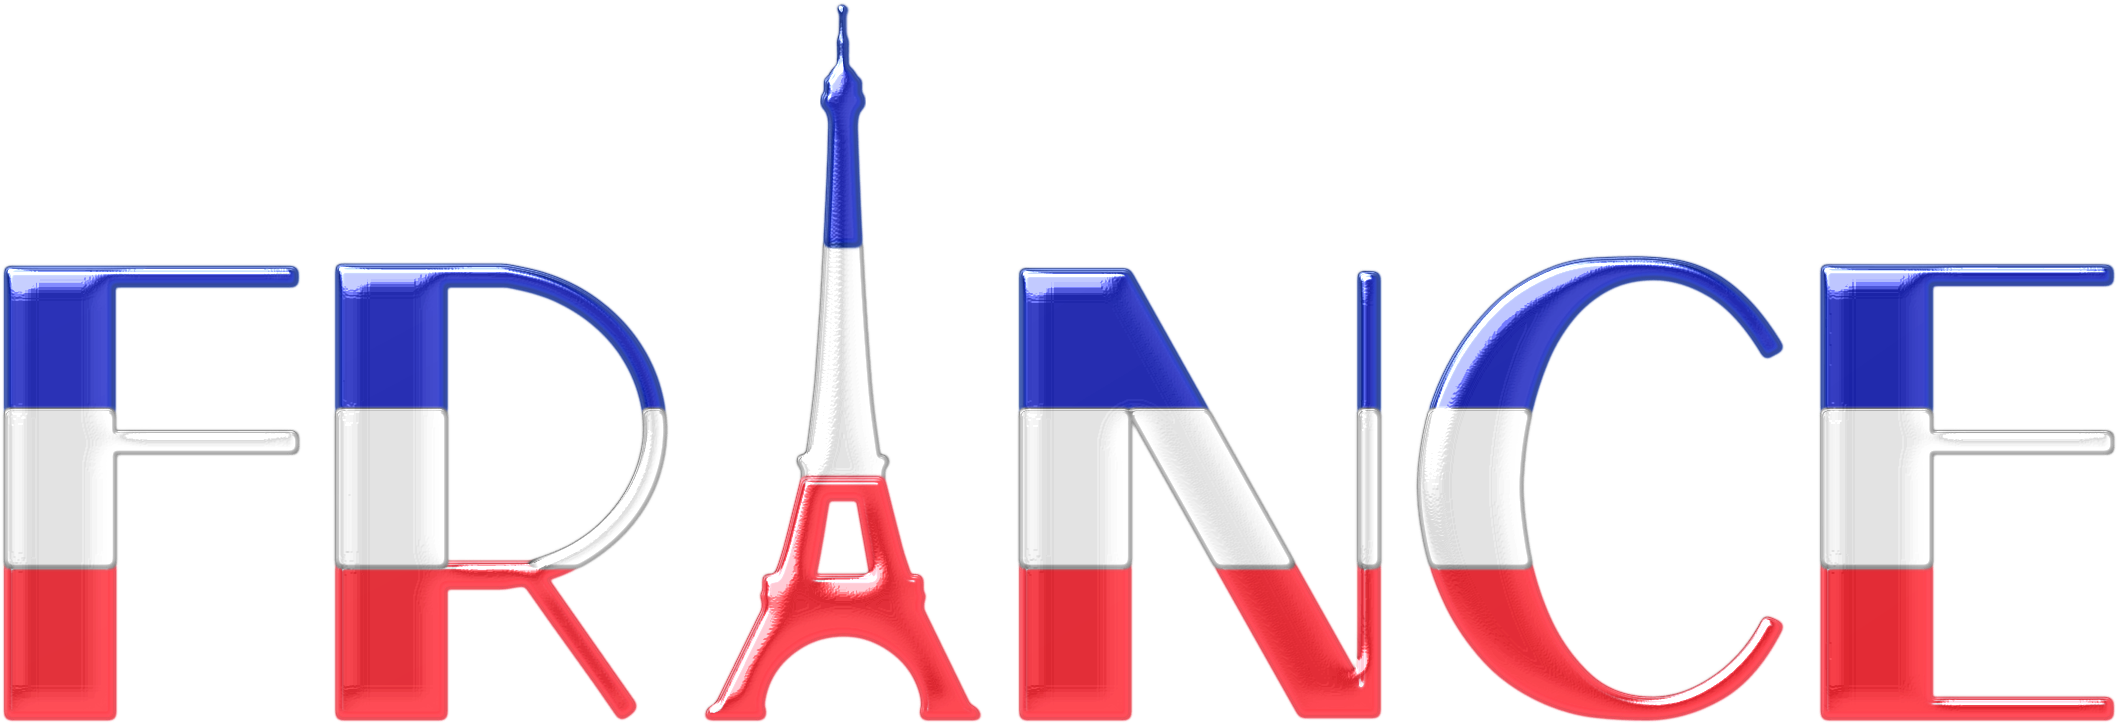 Франция надпись. Логотип Франции. France надпись. Французский язык надпись. Слово french